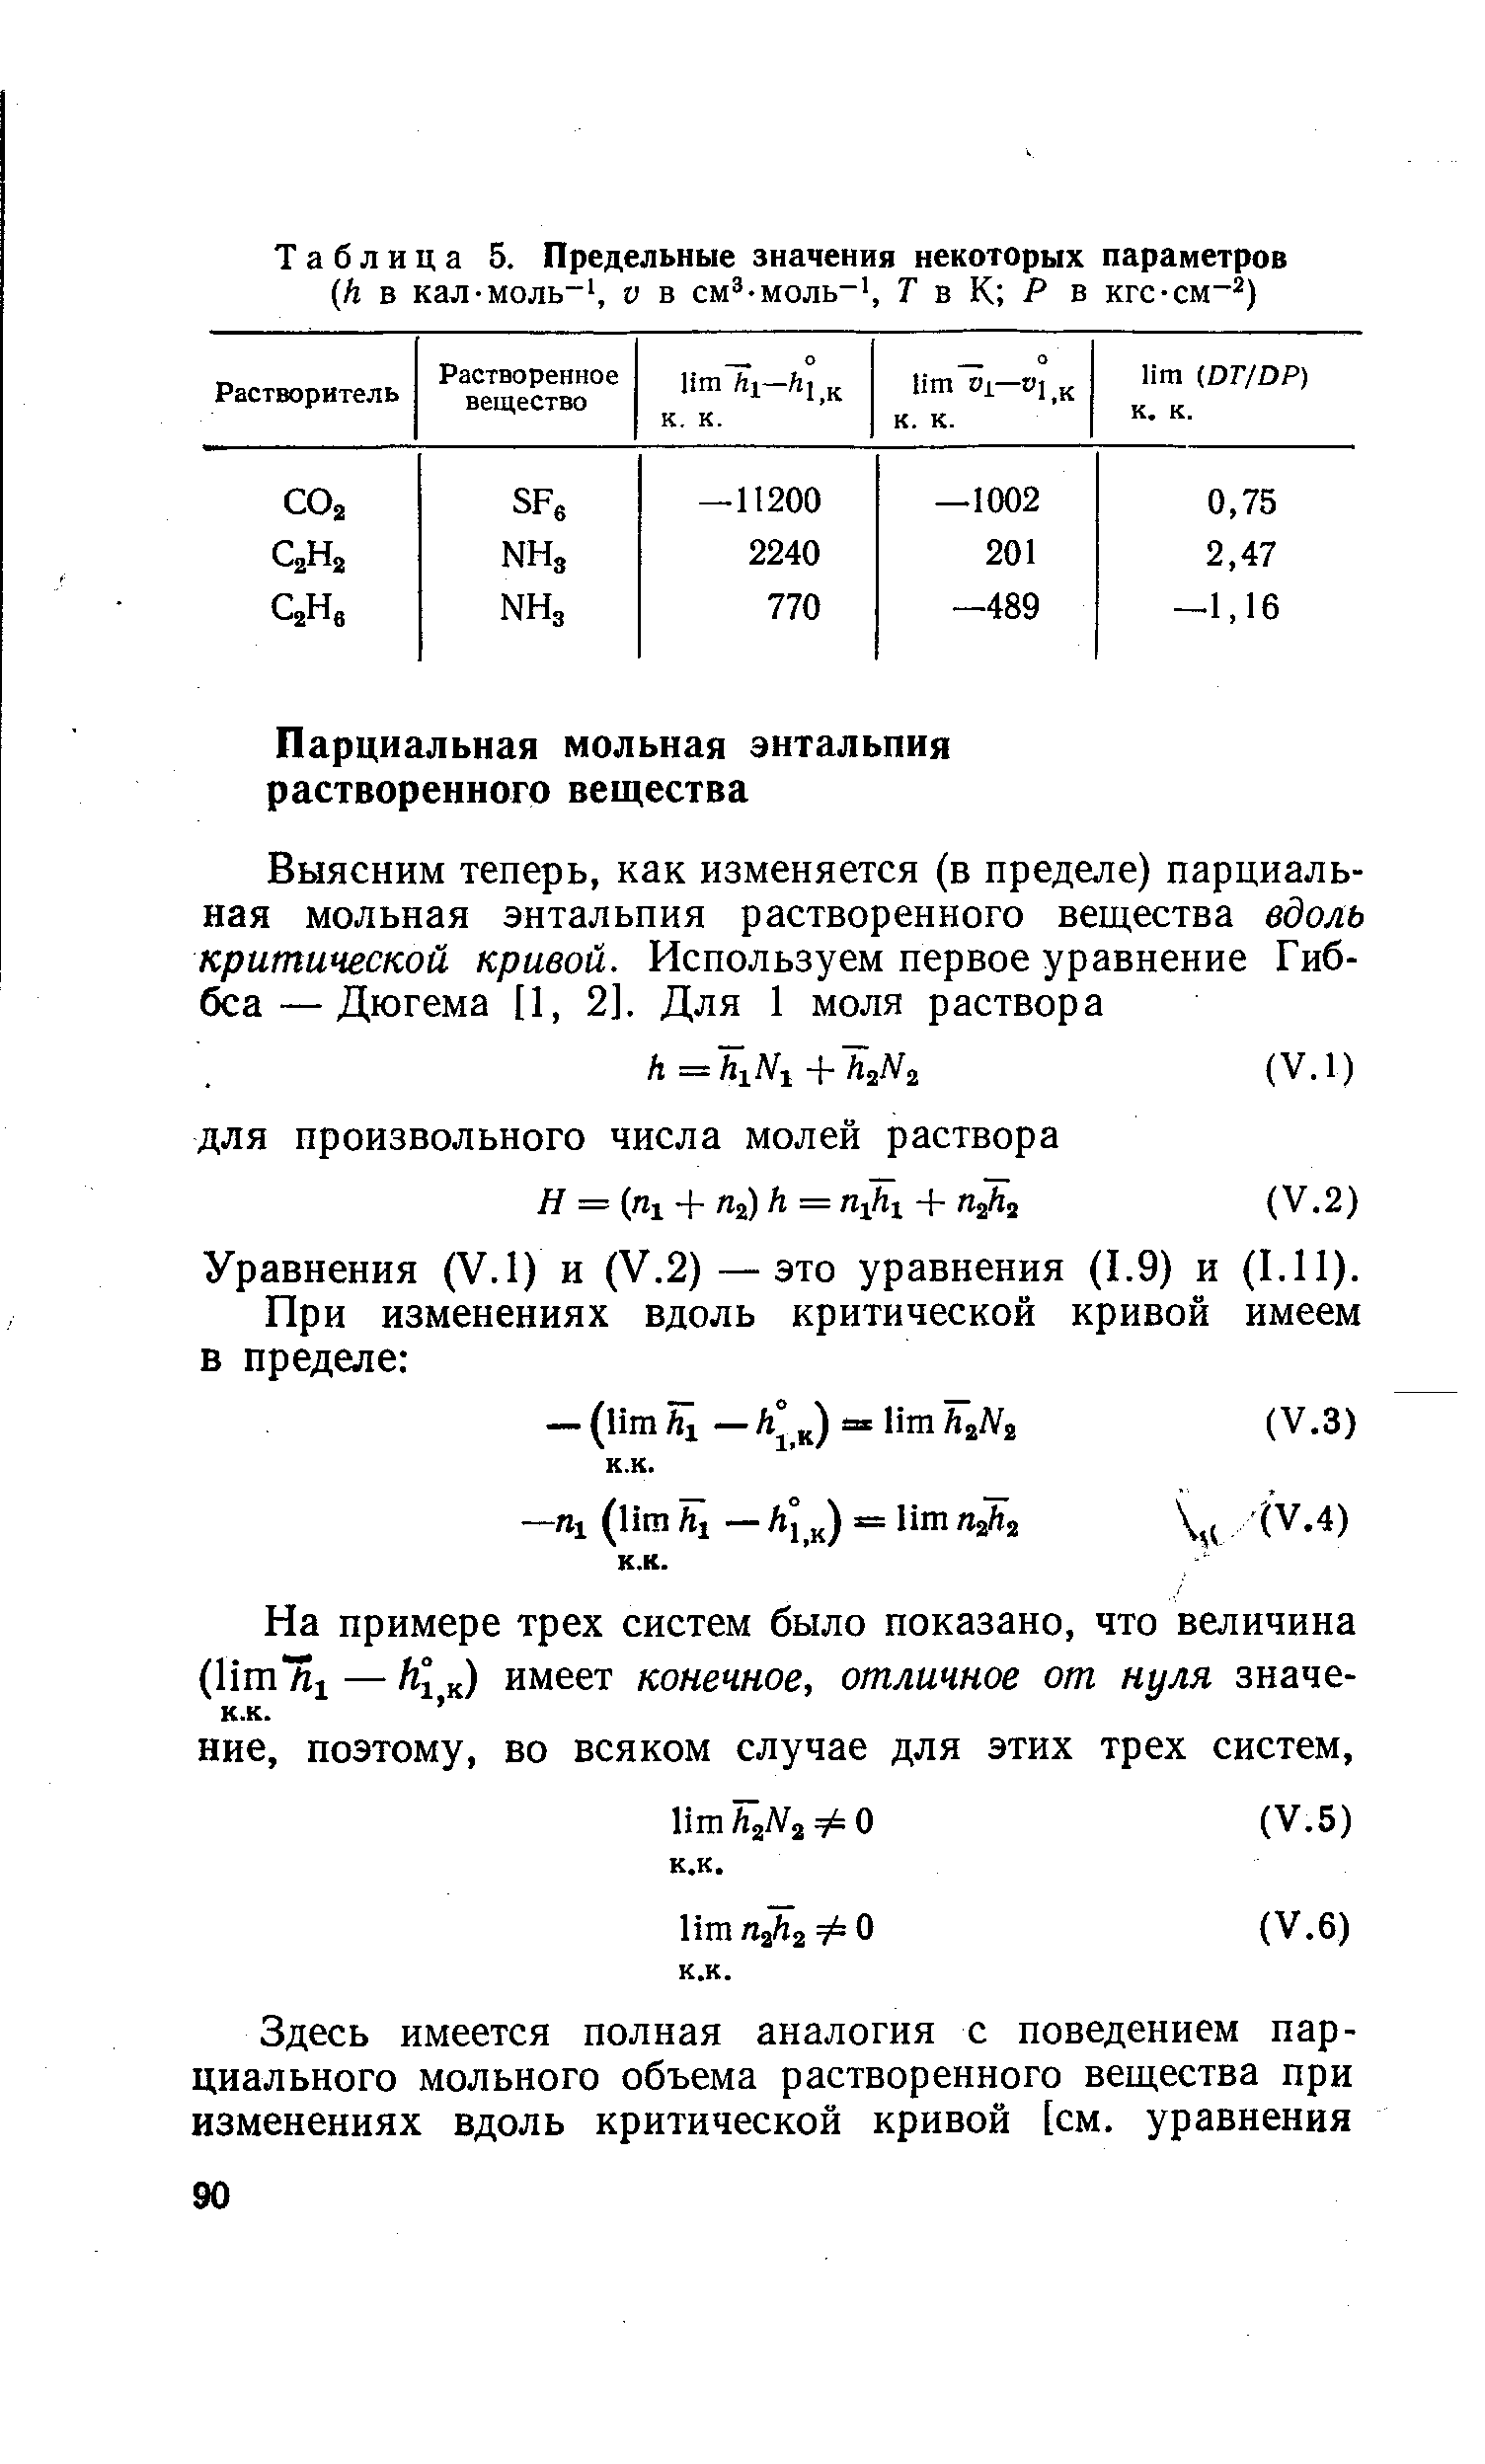 Уравнения (V.I) и (V.2) — это уравнения (1.9) и (1.11).